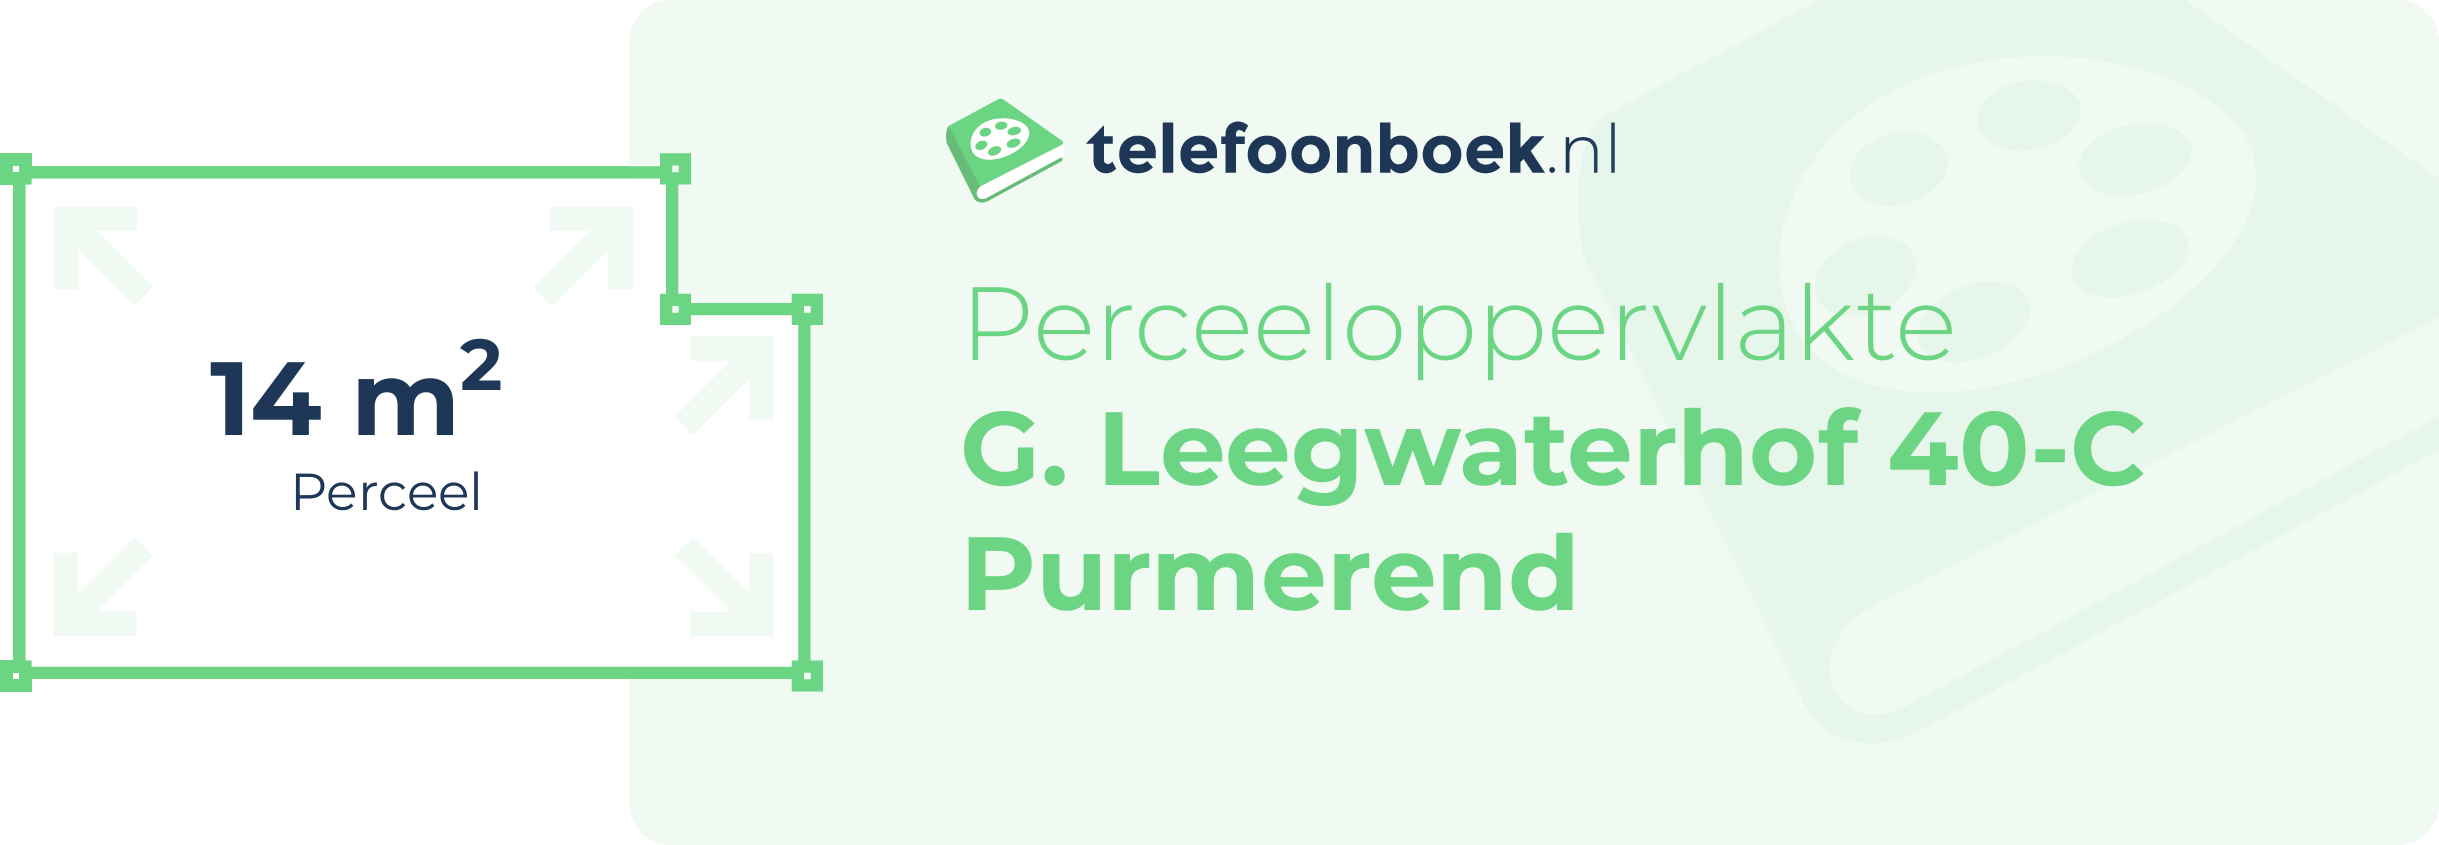 Perceeloppervlakte G. Leegwaterhof 40-C Purmerend